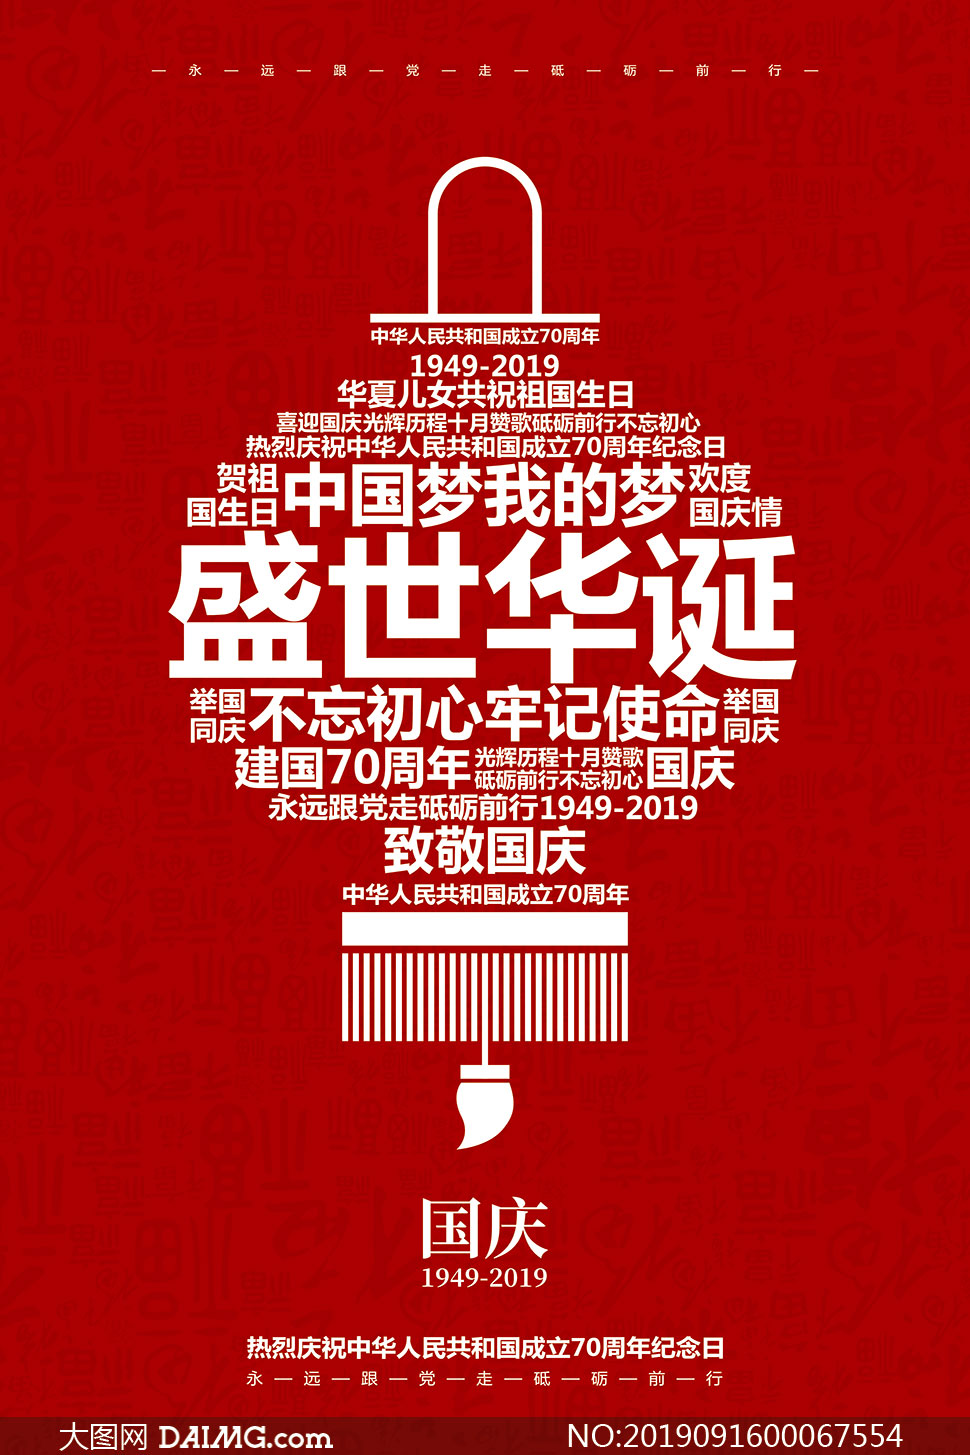 创意国庆节主题海报设计PSD素材